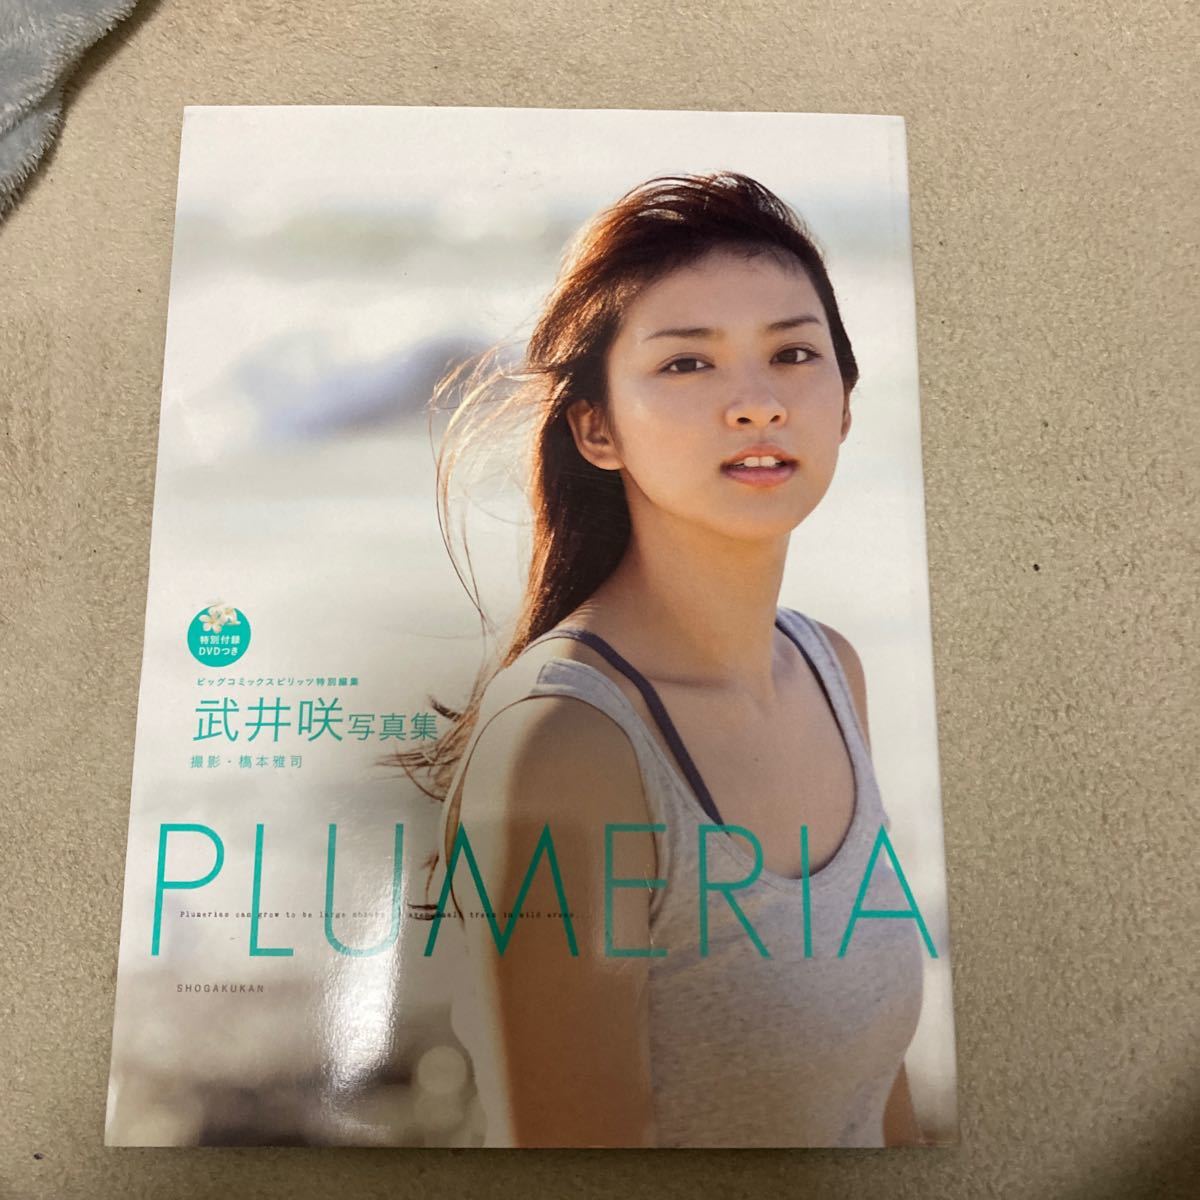 武井咲写真集 Plumeria DVD欠品 クリックポスト可能の画像1